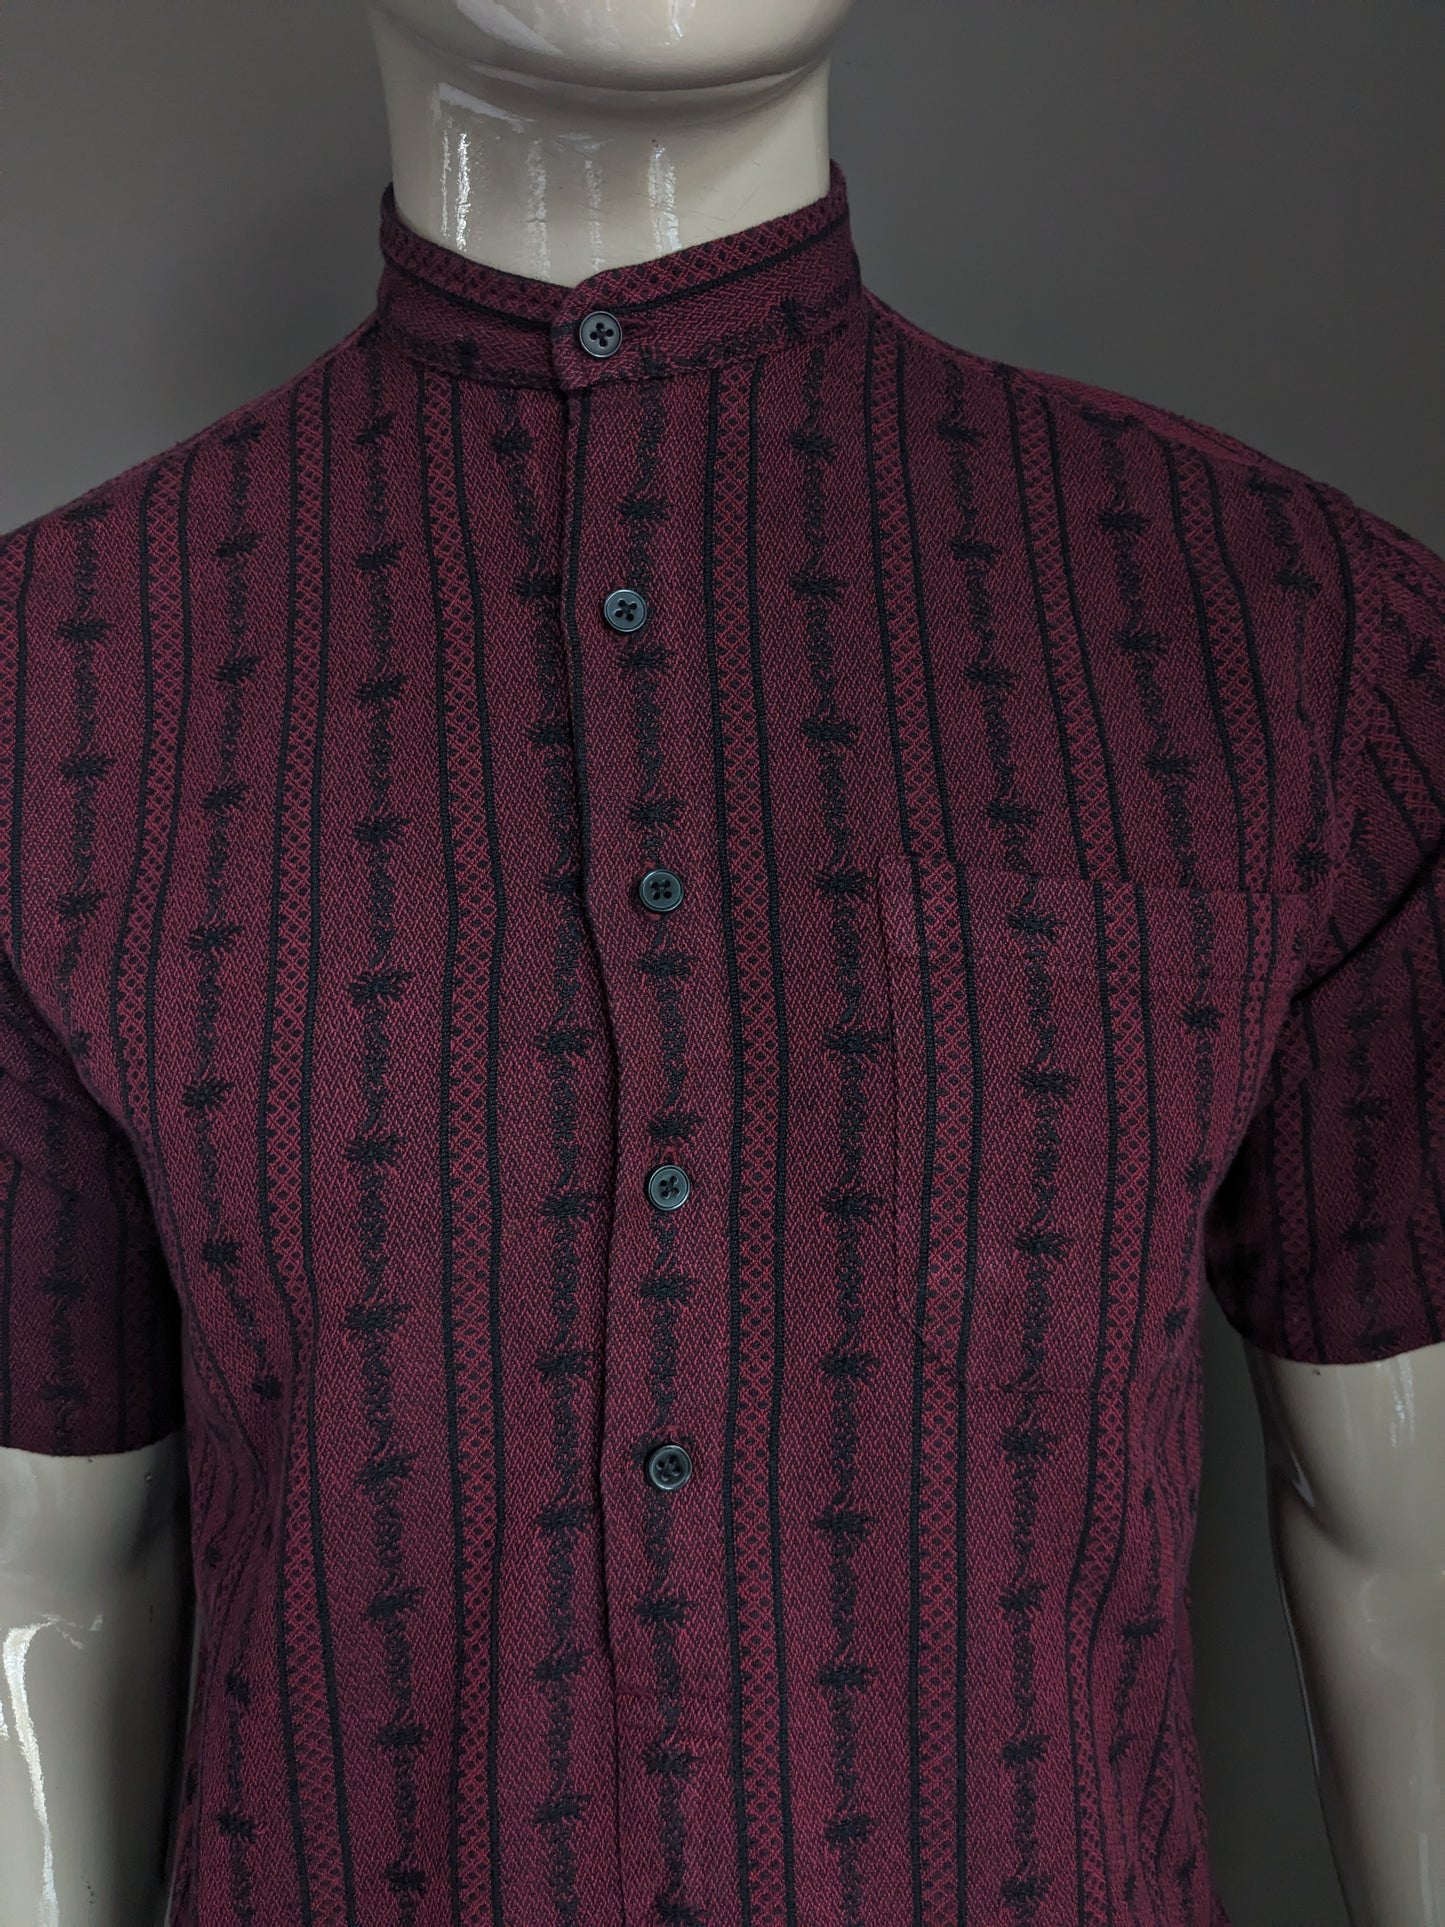 Vintage Atrium -Hemd mit Knöpfen und MAO / Bauern / aufrechtem Kragen. Bordeaux schwarz gefärbt. Größe S / M.